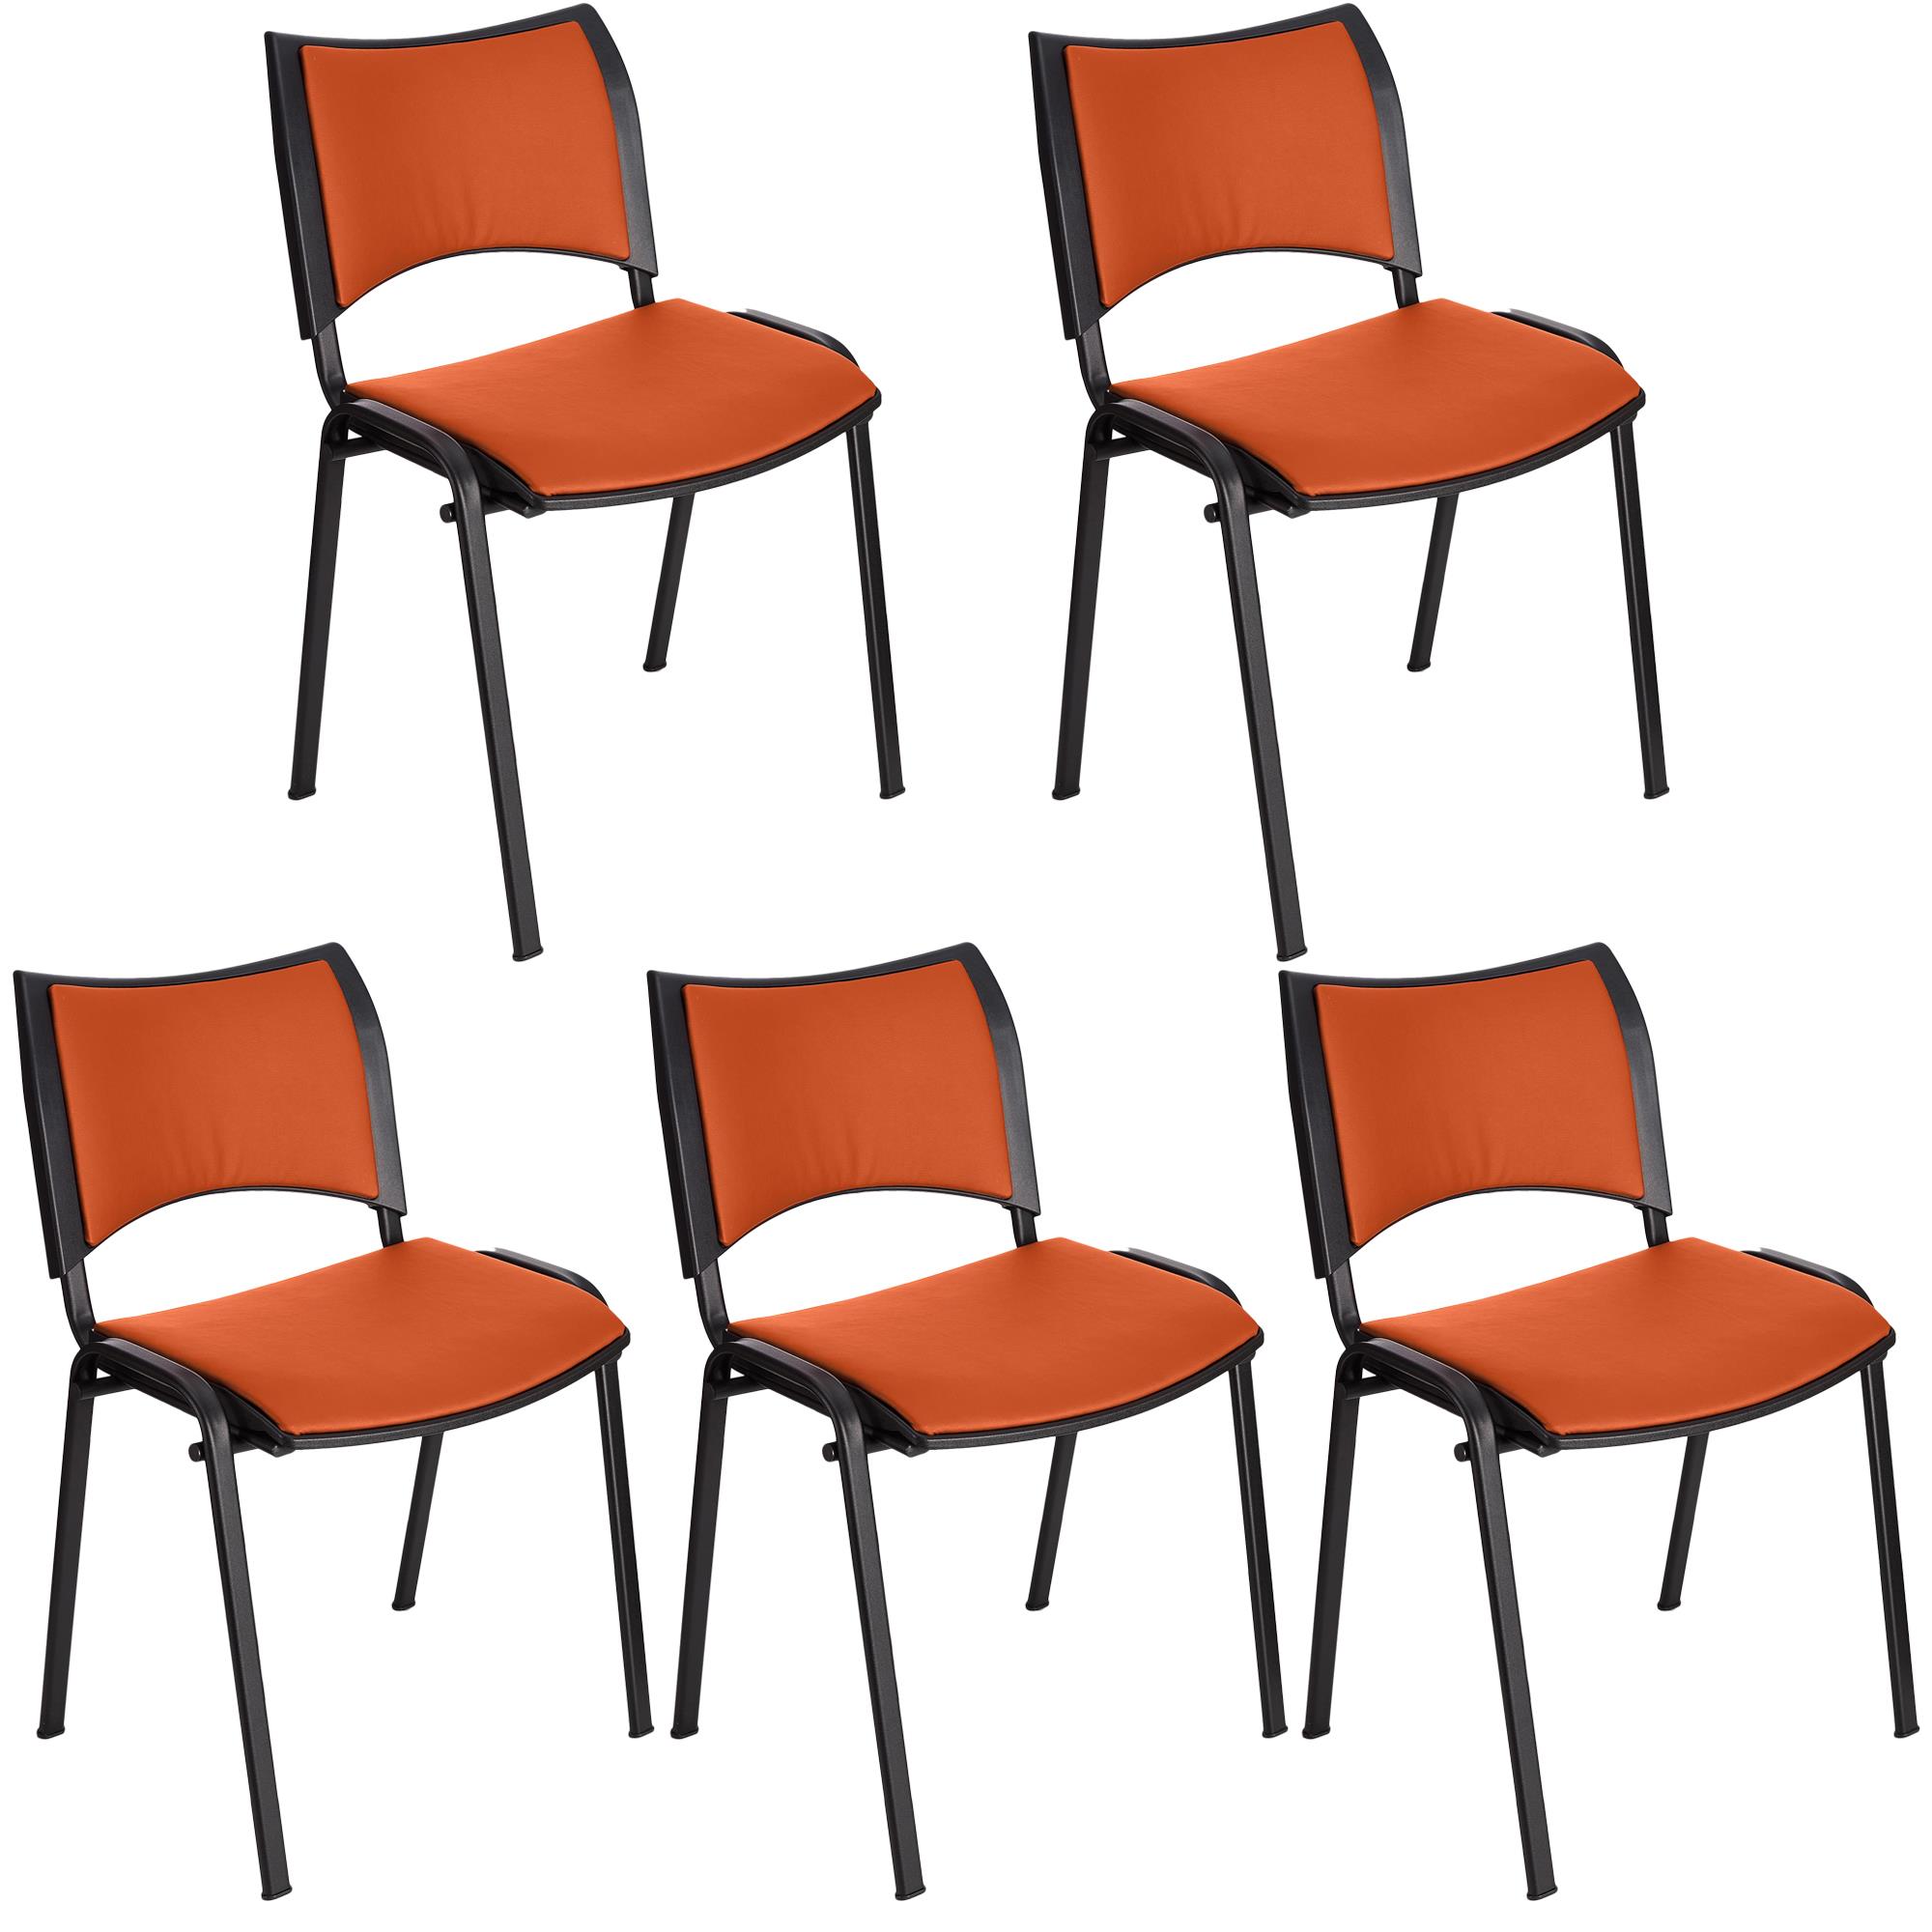 Lote 5 Cadeiras de Visita ROMEL PELE, Prática e Empilhável, Pernas Pretas, Laranja